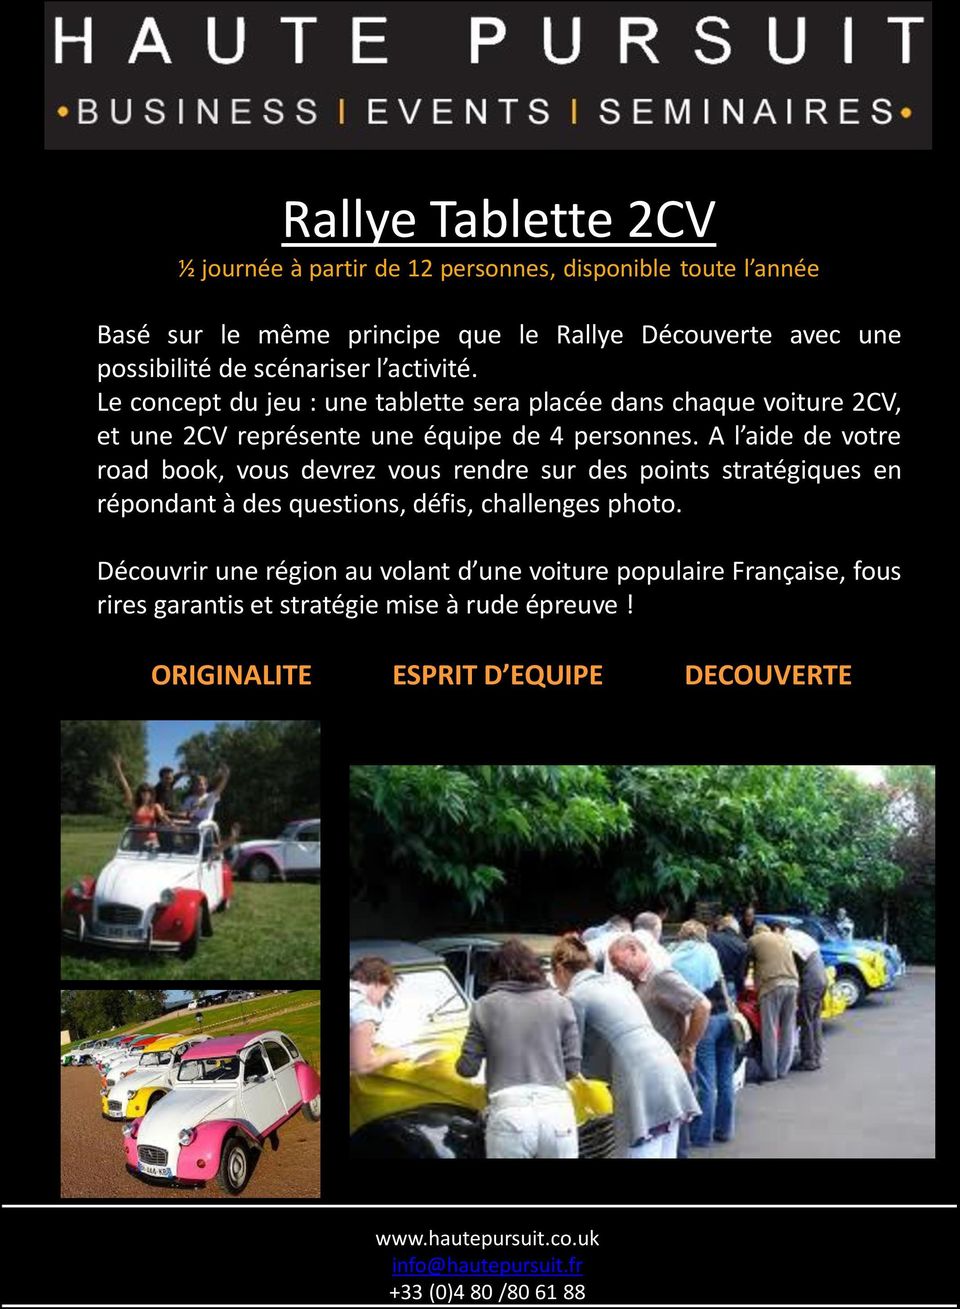 Le concept du jeu : une tablette sera placée dans chaque voiture 2CV, et une 2CV représente une équipe de 4 personnes.